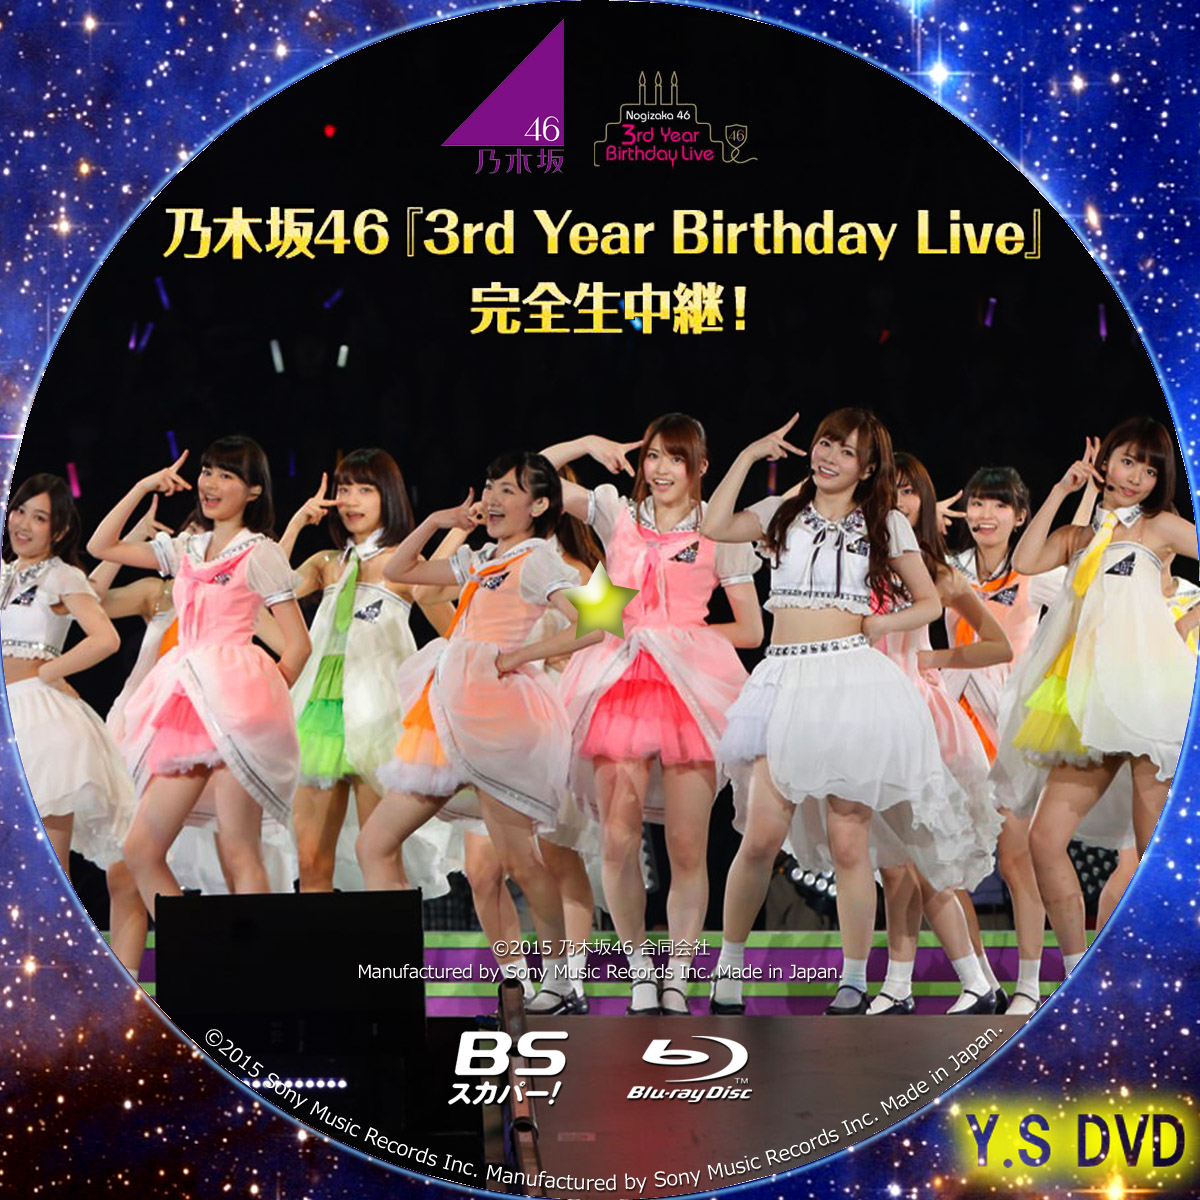 乃木坂４６ 3rd year Birthday Live ＢＳスカパー版 | Y.Sオリジナル 